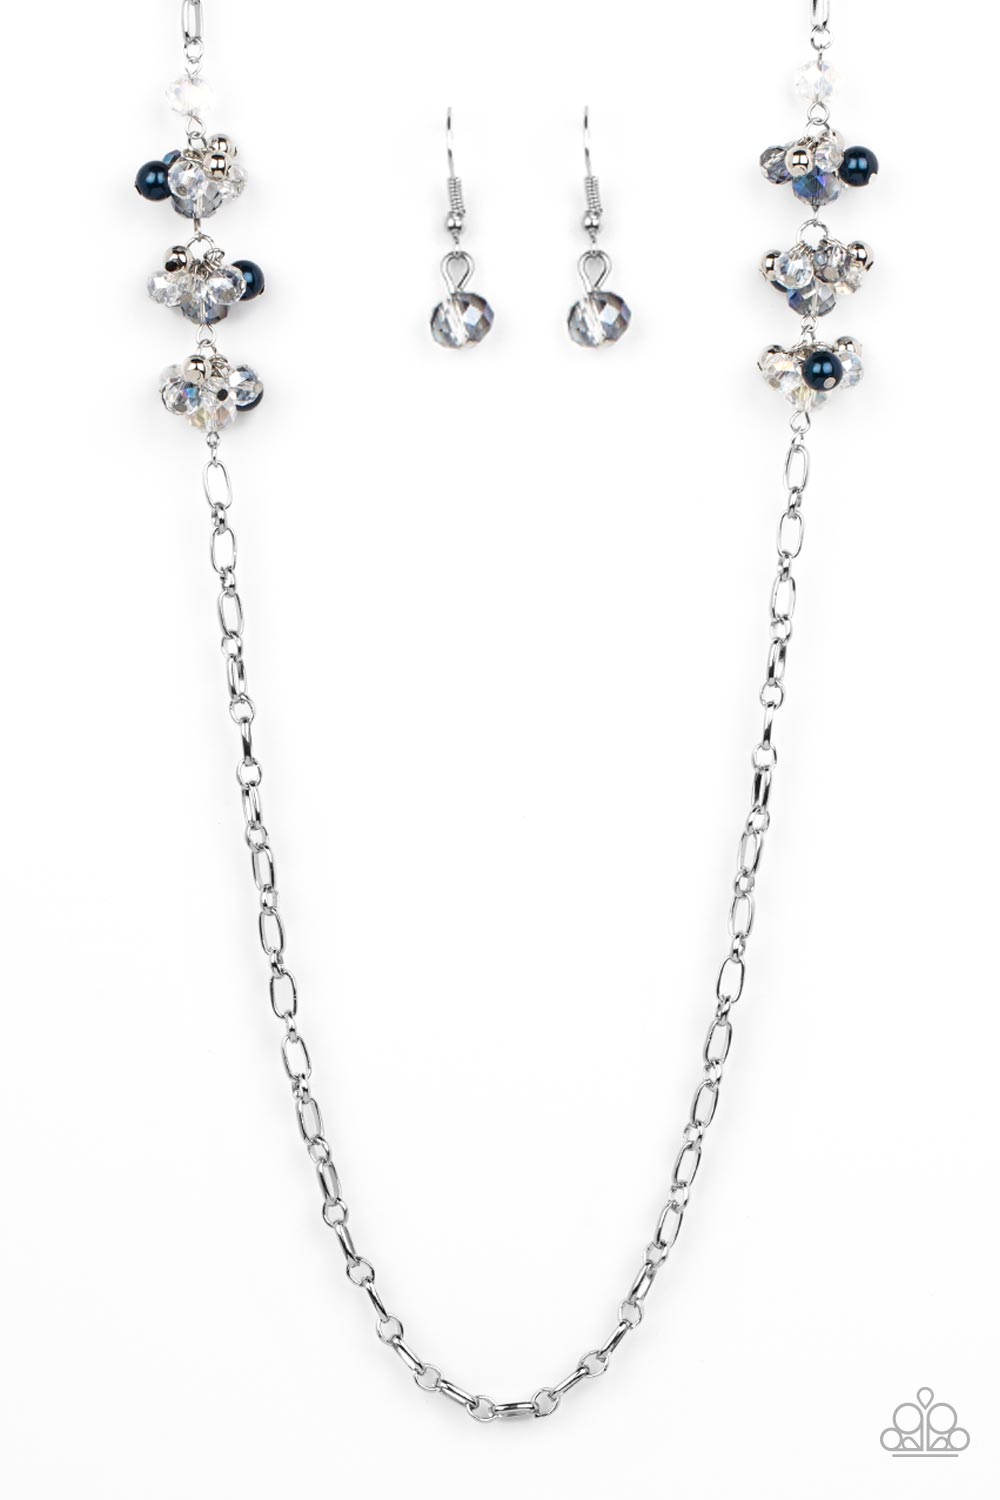 Poshly Parisian - Blue Necklace & Earrings Set-Necklace-SPARKLE ARMAND